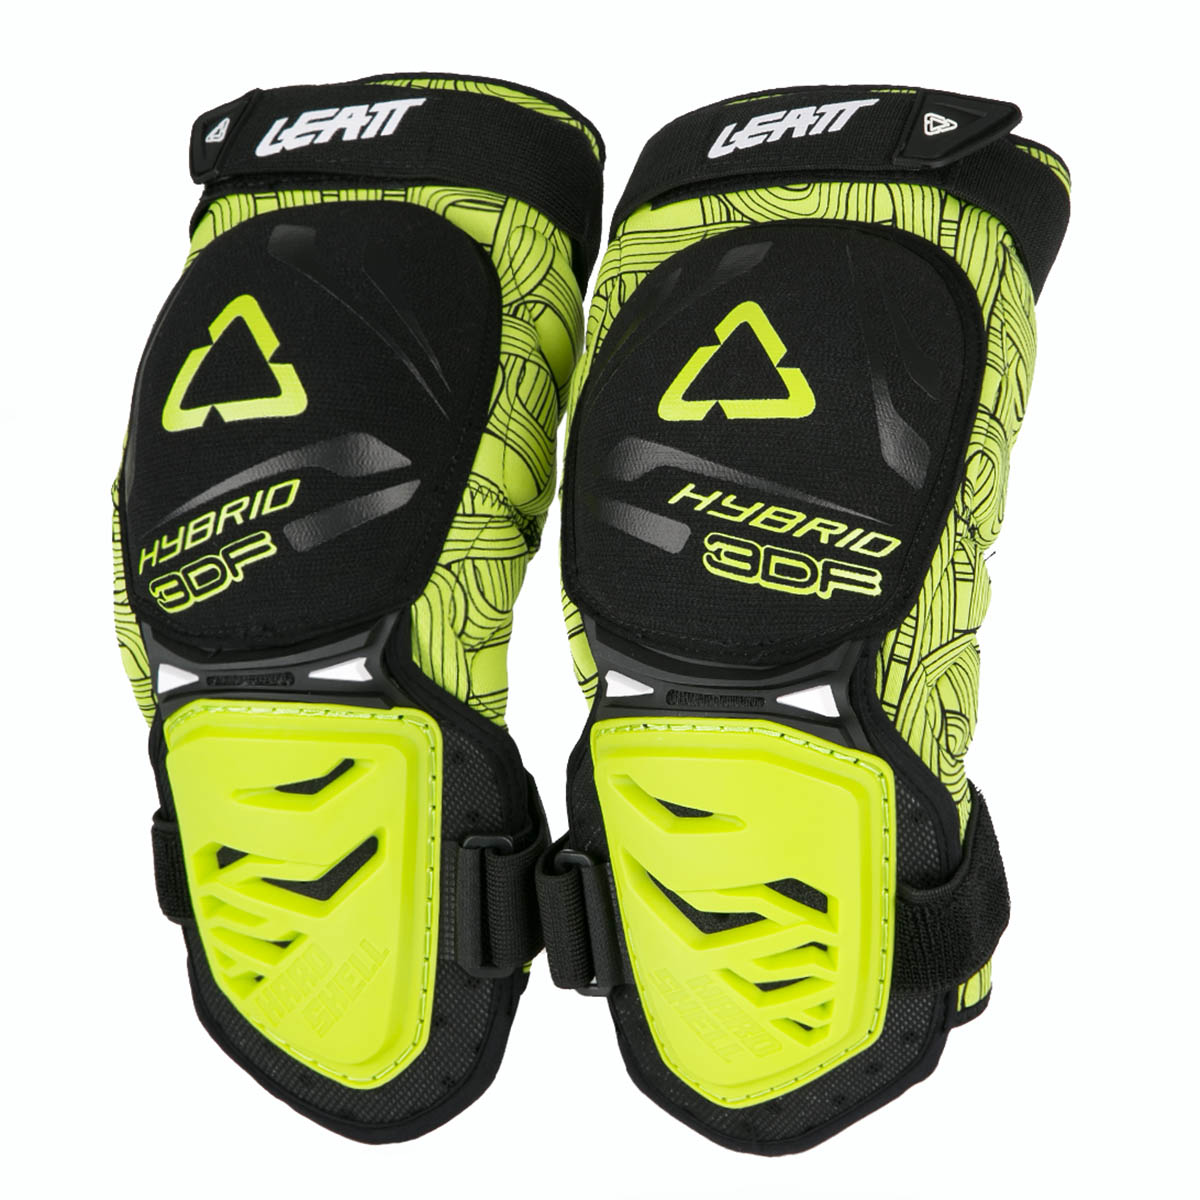 Leatt Knee Guard 3DF Hybrid Black/Lime